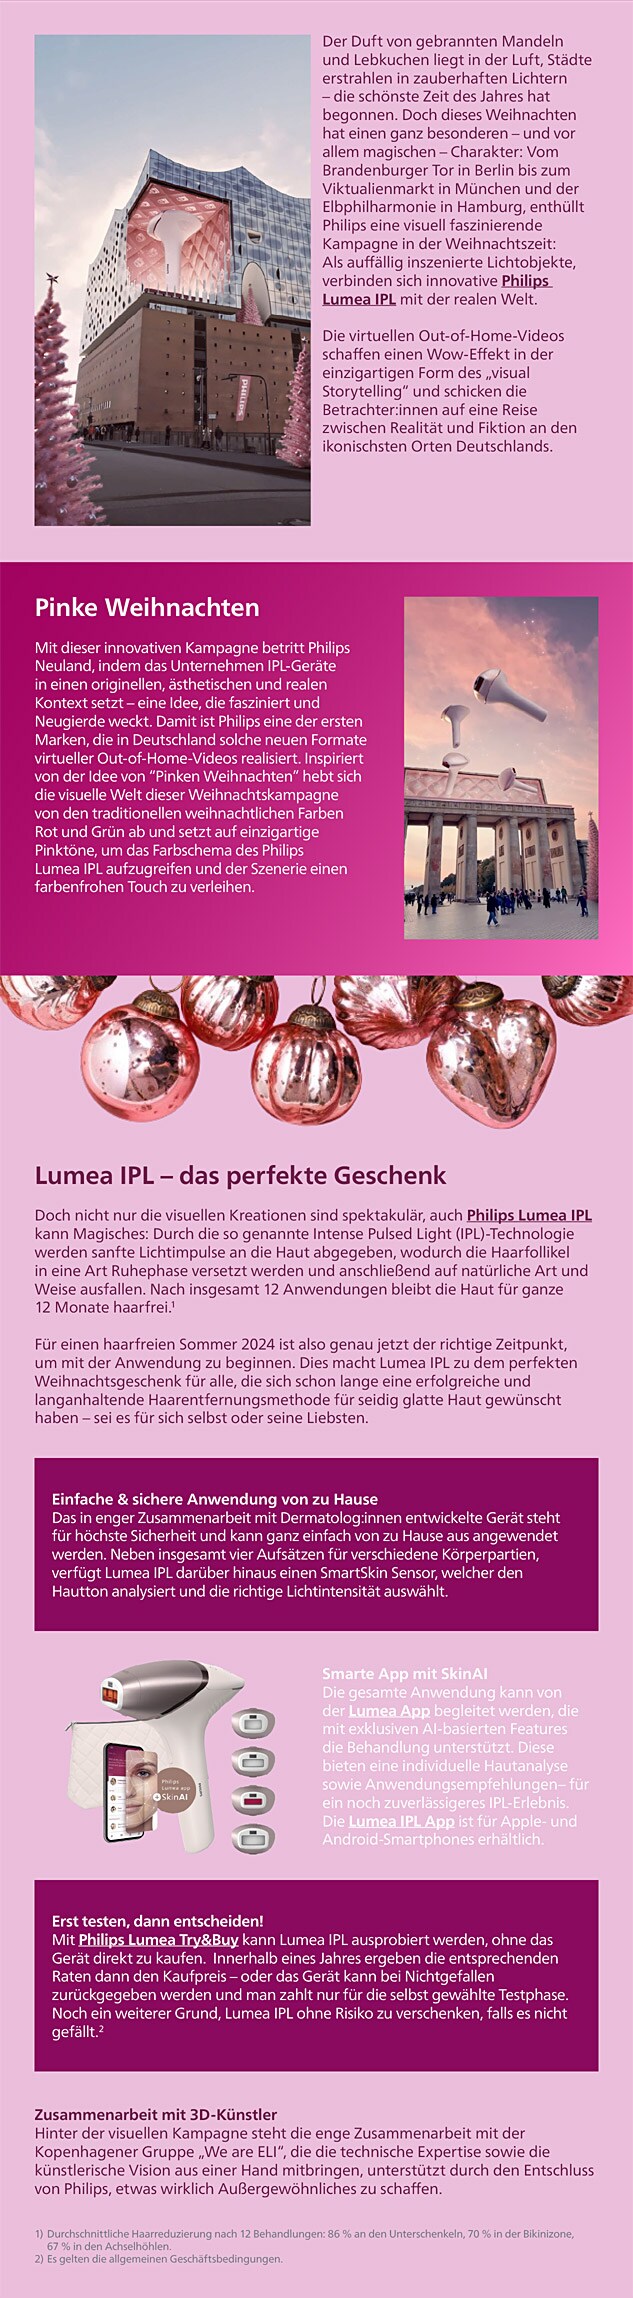 Philips Themensheet - Philips verzaubert zur Weihnachtszeit – mit einer kreativen Kampagne und dem Lumea IPL